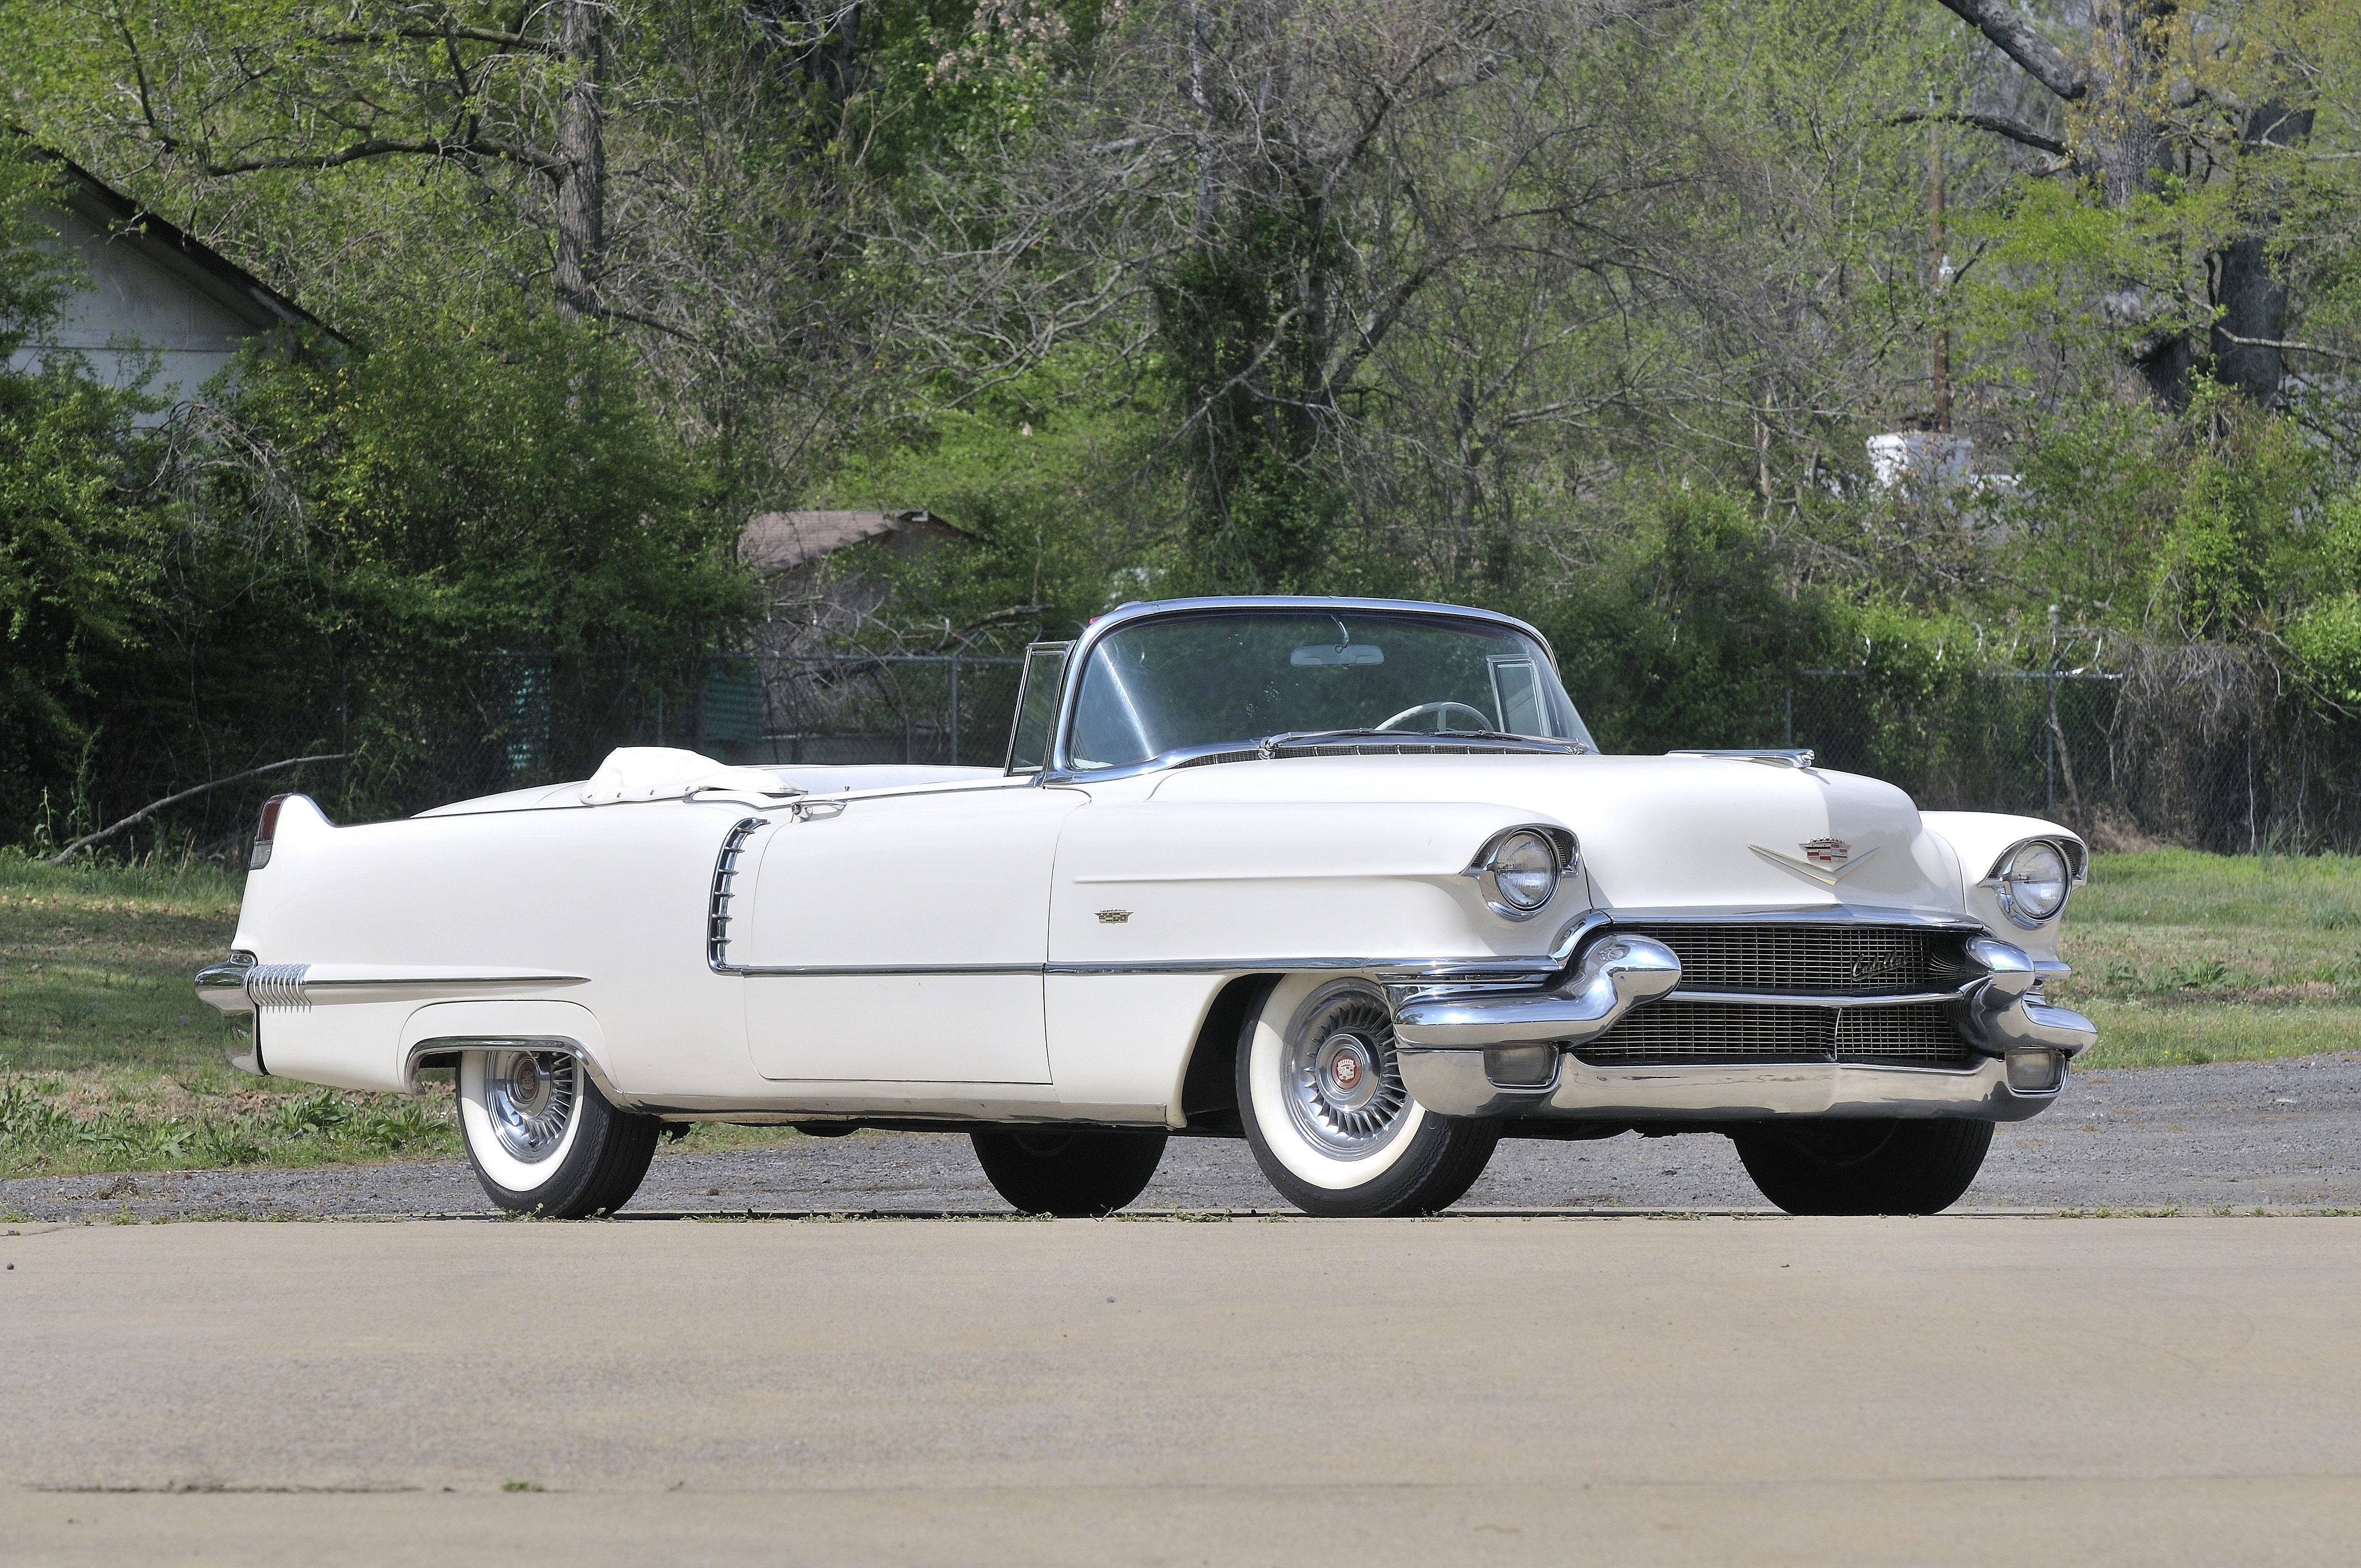 1956, Cadillac, Deville, Convertible, White, Classic, Old, Retro, Usa, 4200x2790 01 Wallpaper